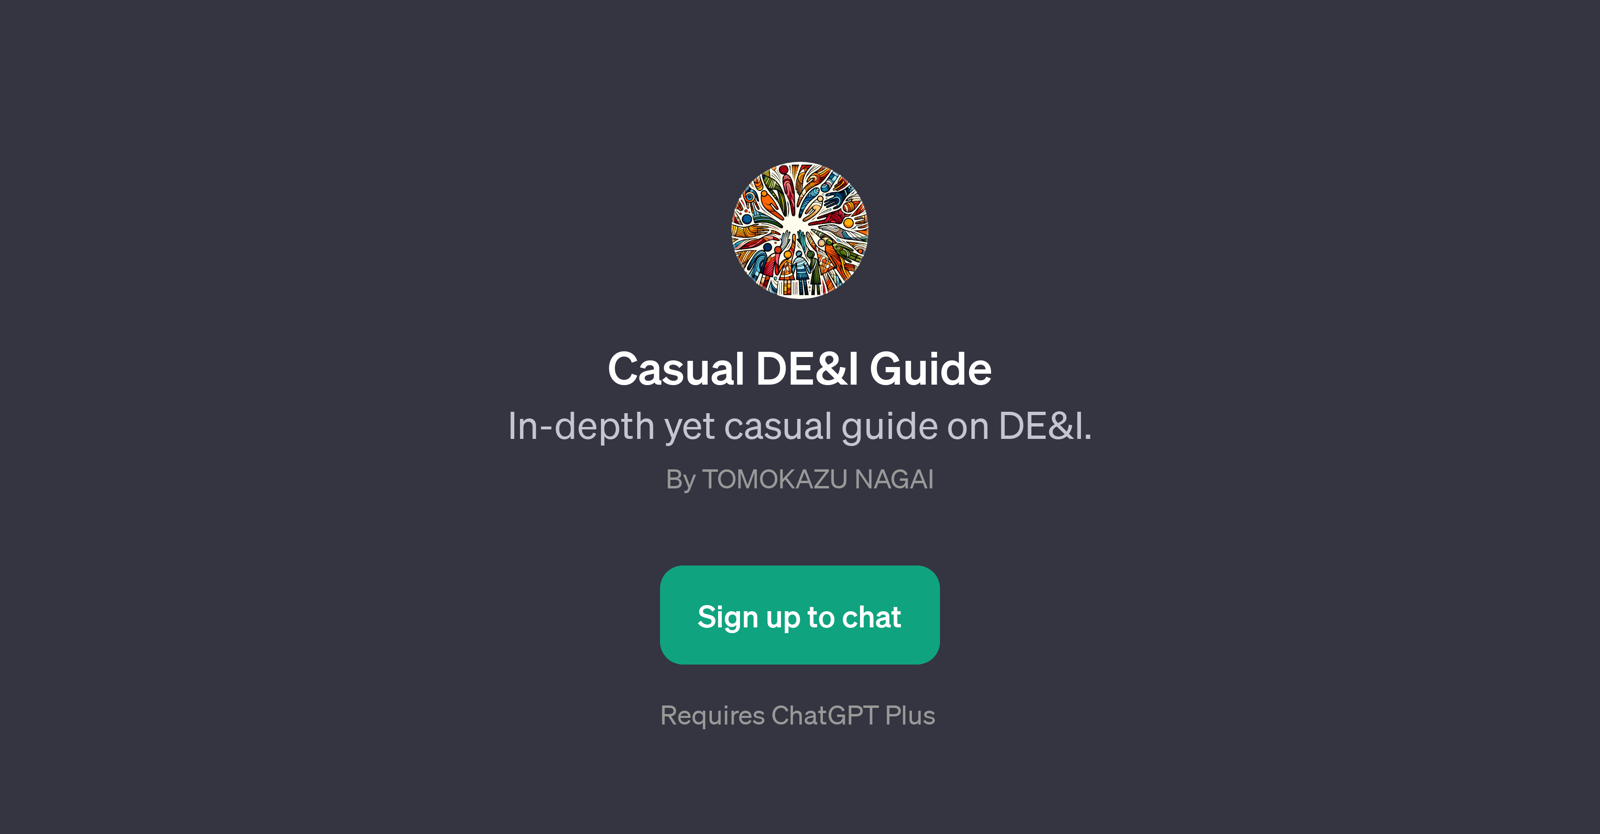 Casual DE&I Guide website